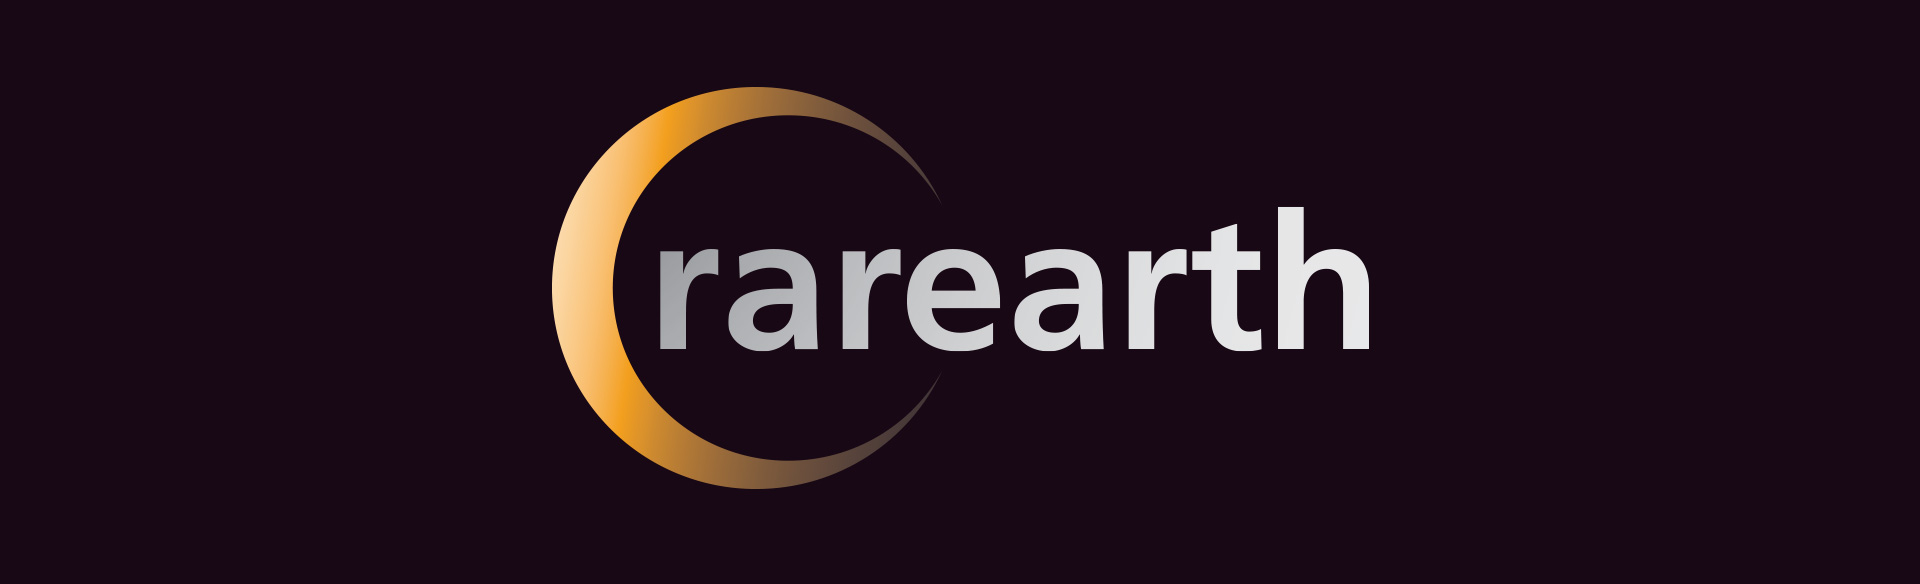 rarearth logo design